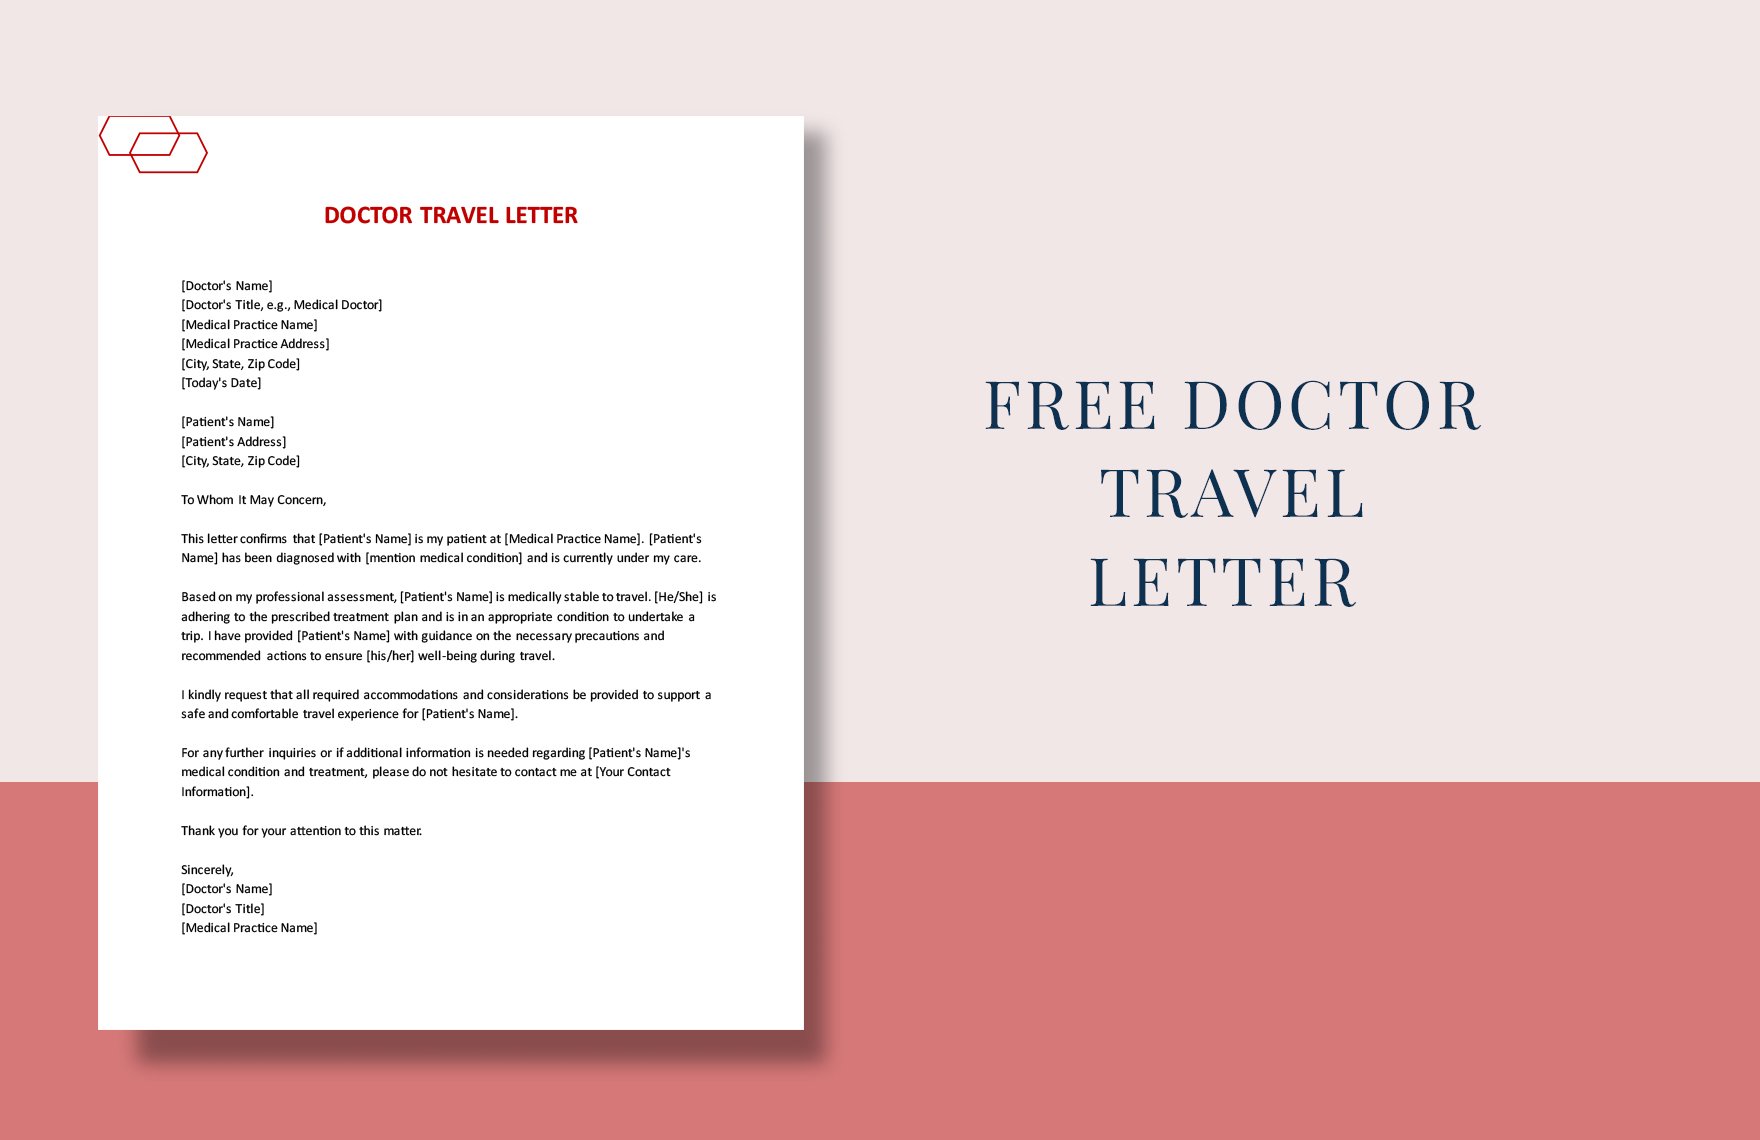 Doctor Travel Letter